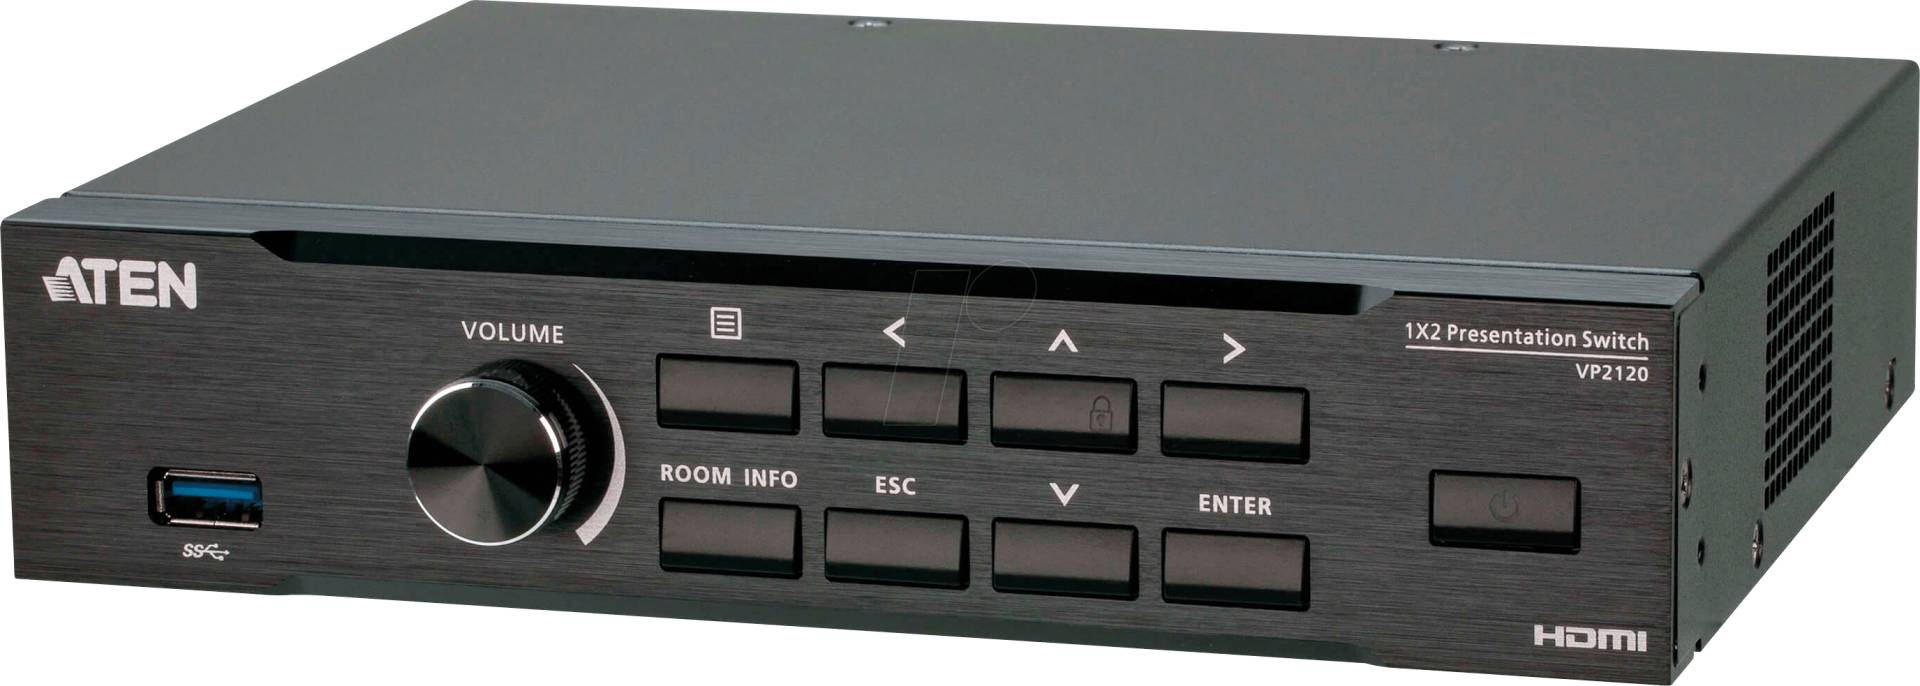 ATEN VP2120 - HDMI Präsentation Matrix Switch von Aten